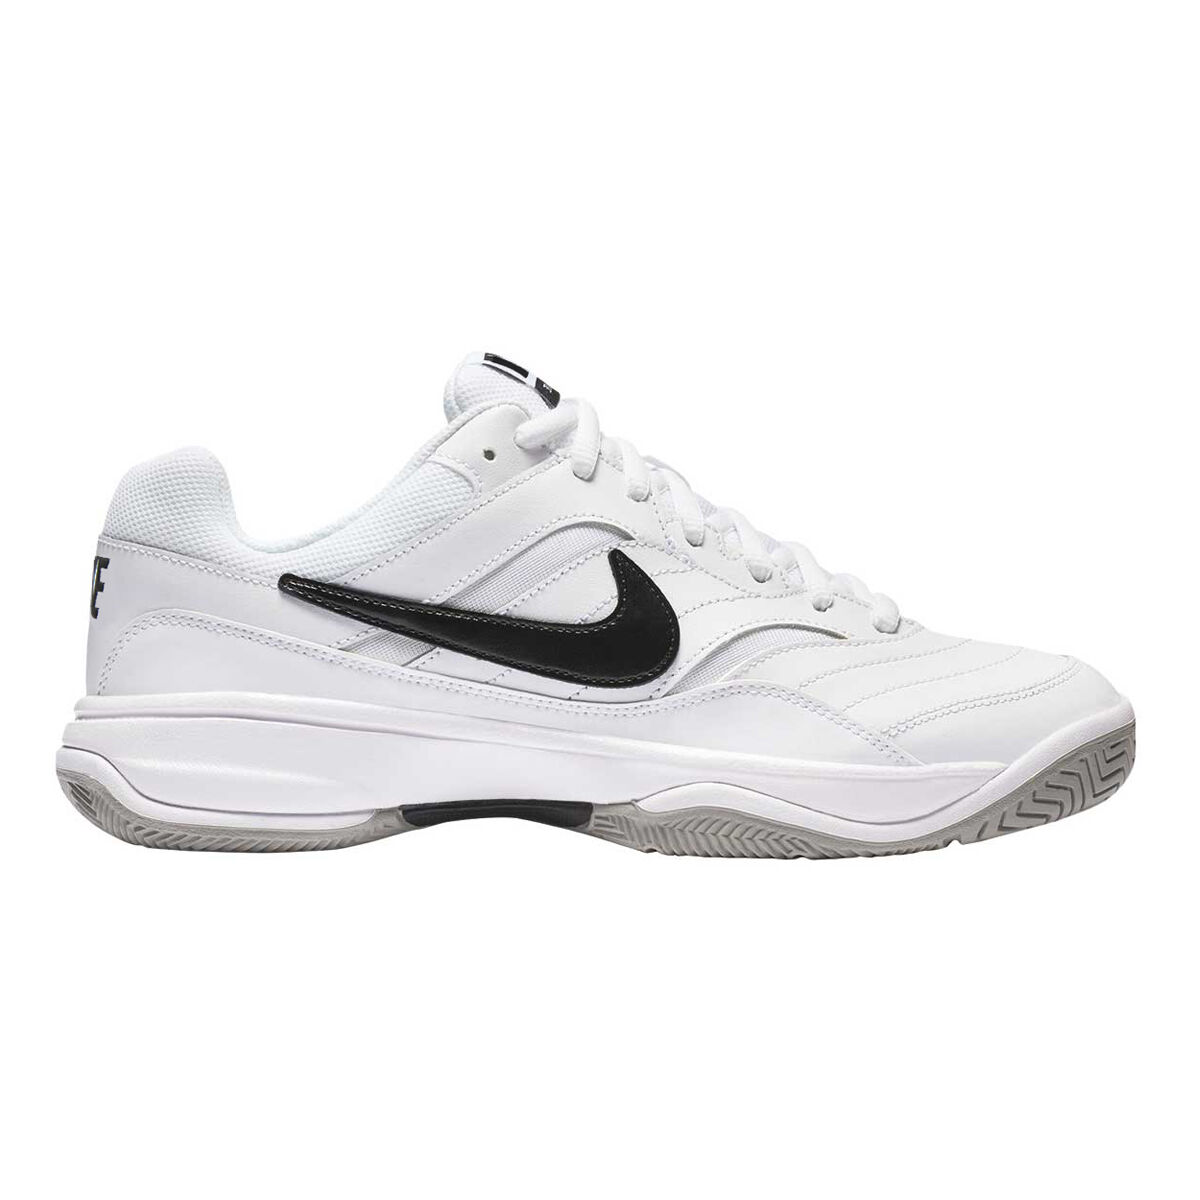 size 14 wide men's tennis shoes